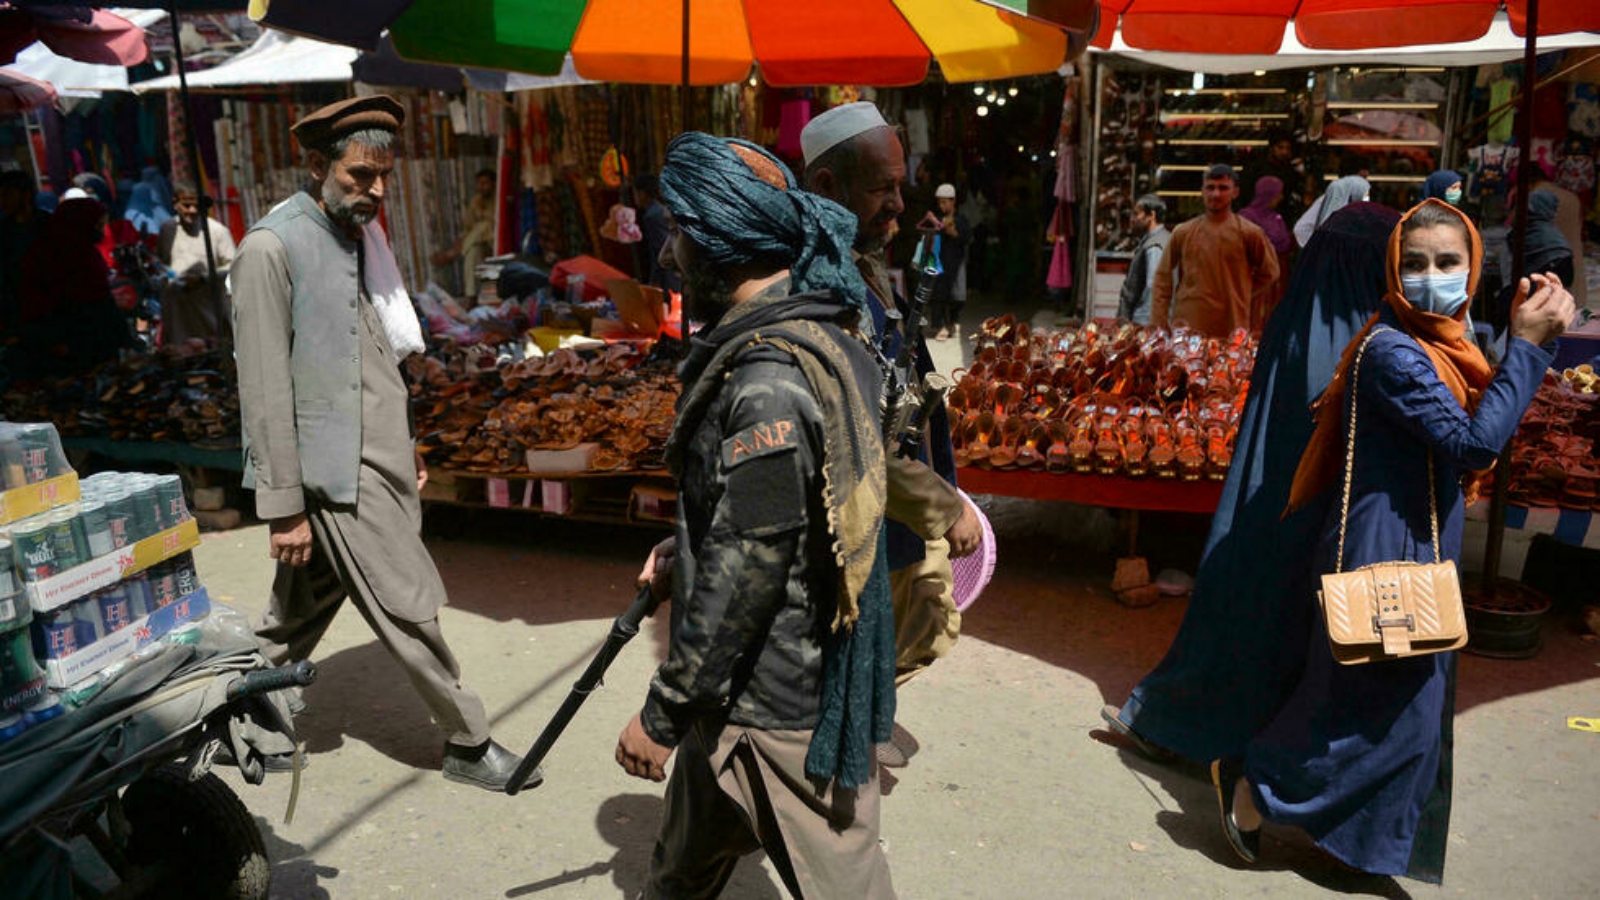 امرأة تنظر إلى الوراء بينما كان مقاتل من طالبان (وسط) يسير بجوار المتسوقين على طول سوق منداوي في كابول. بتاريخ 1 أيلول/ سبتمبر 2021.